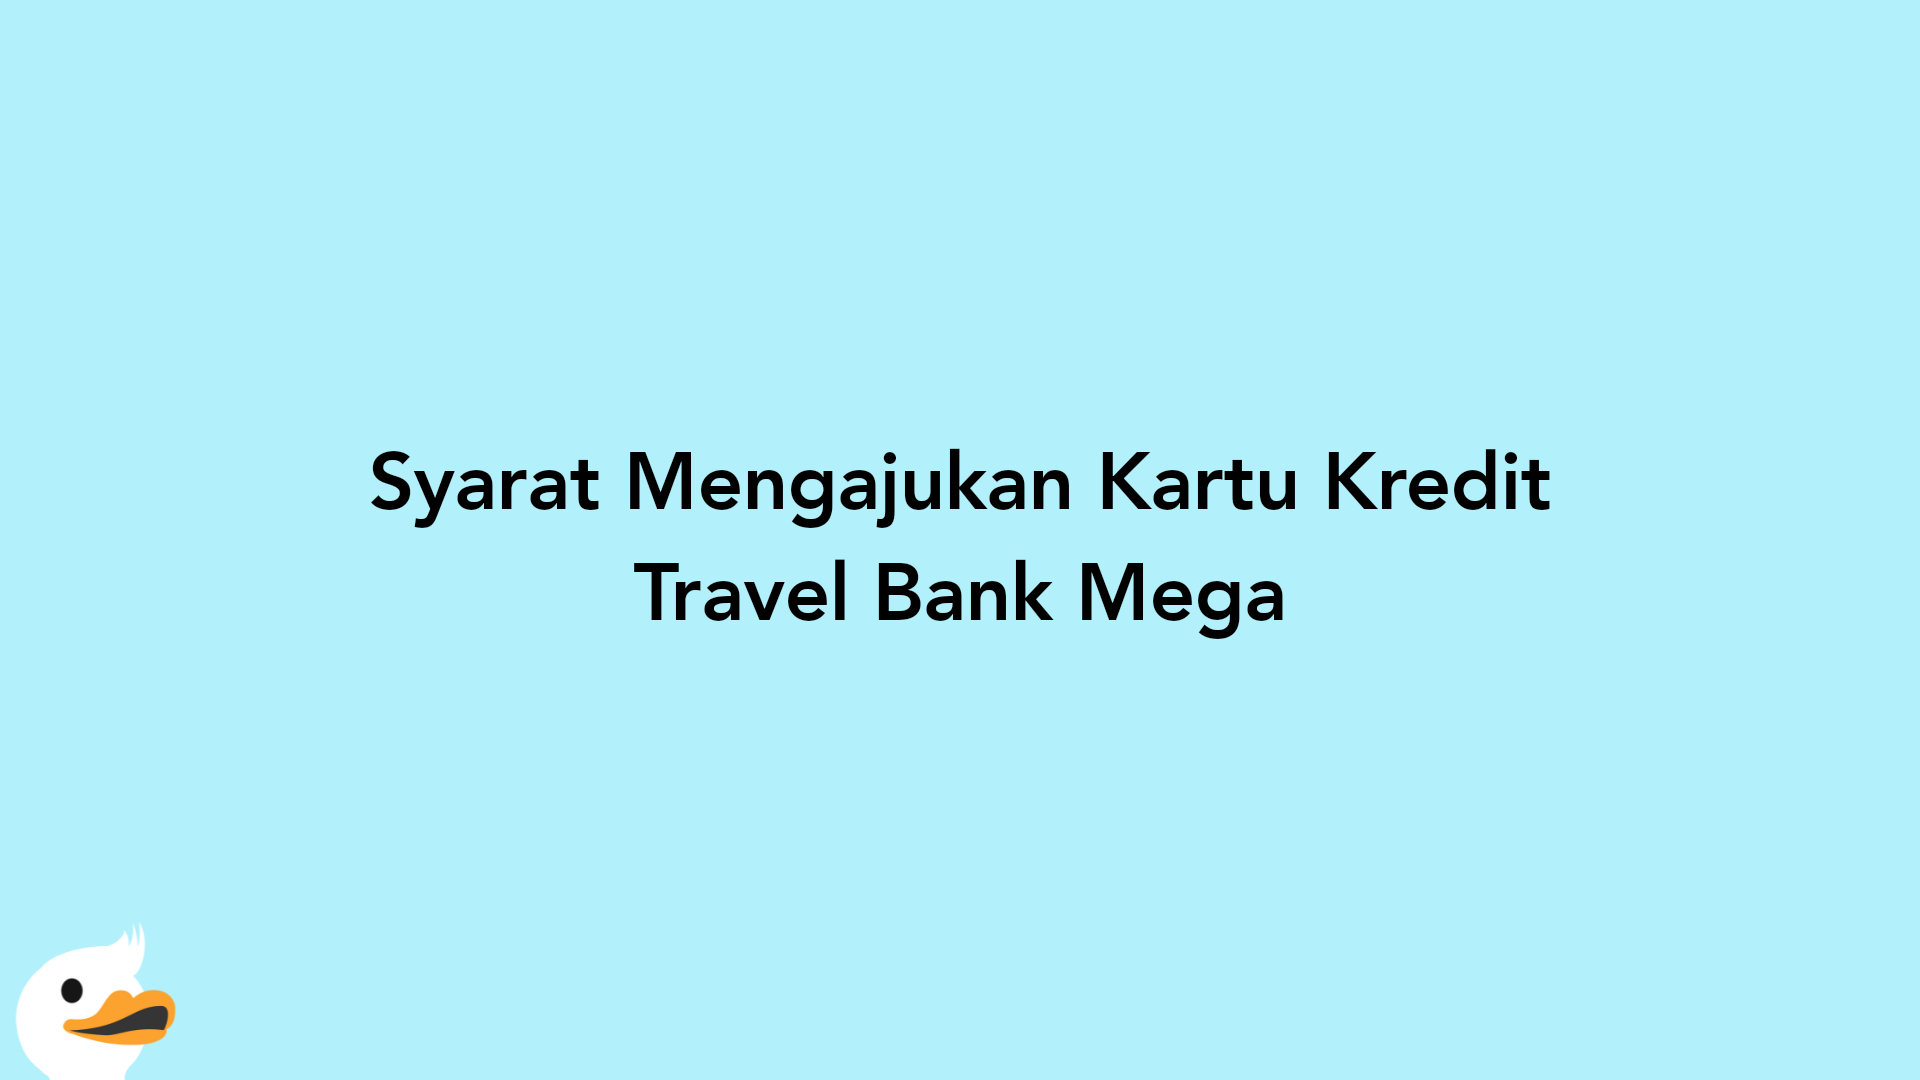 Syarat Mengajukan Kartu Kredit Travel Bank Mega